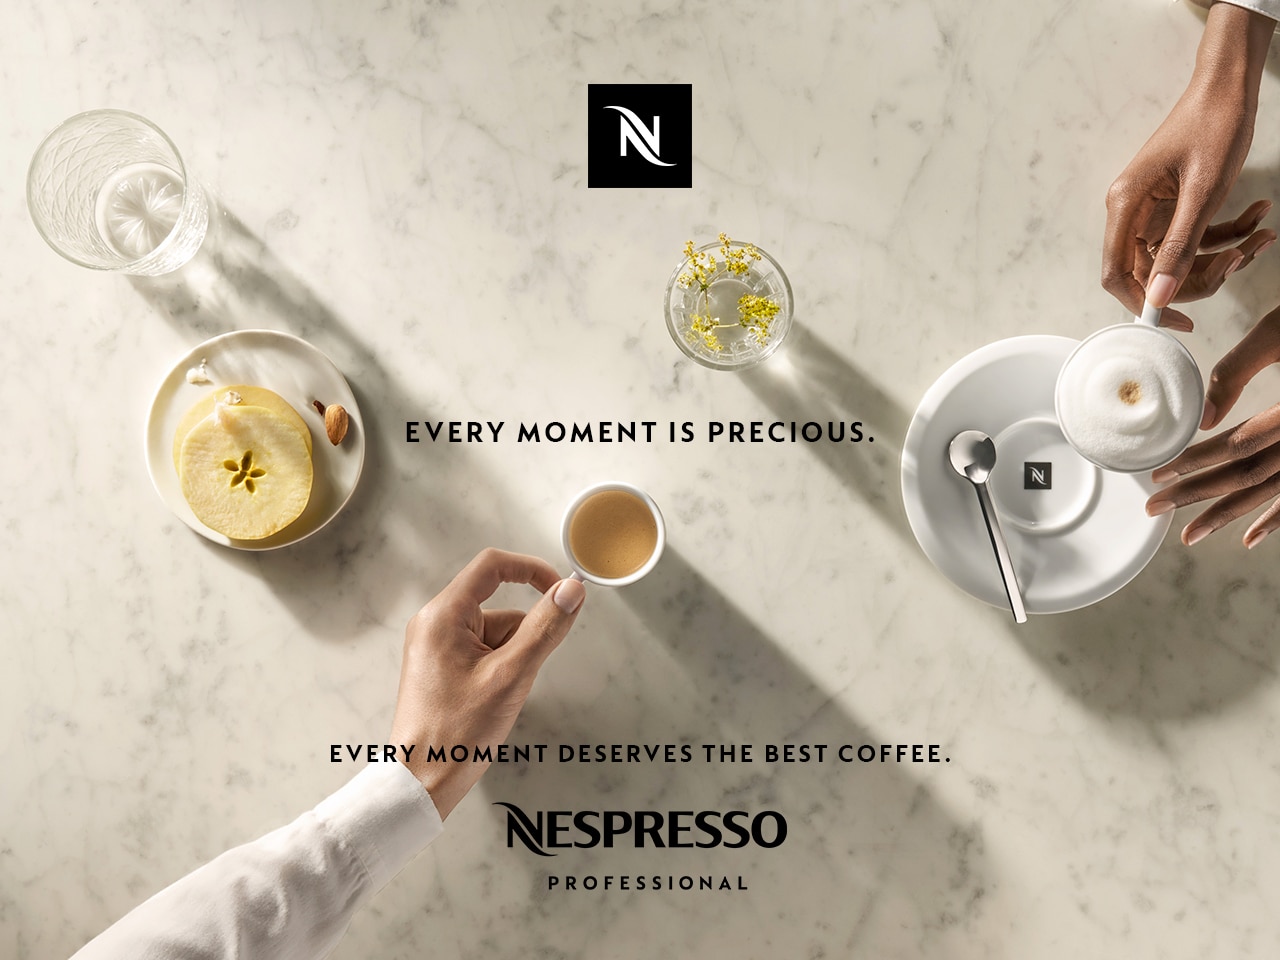 Nespresso Coffee Moments Nespresso Professional UK